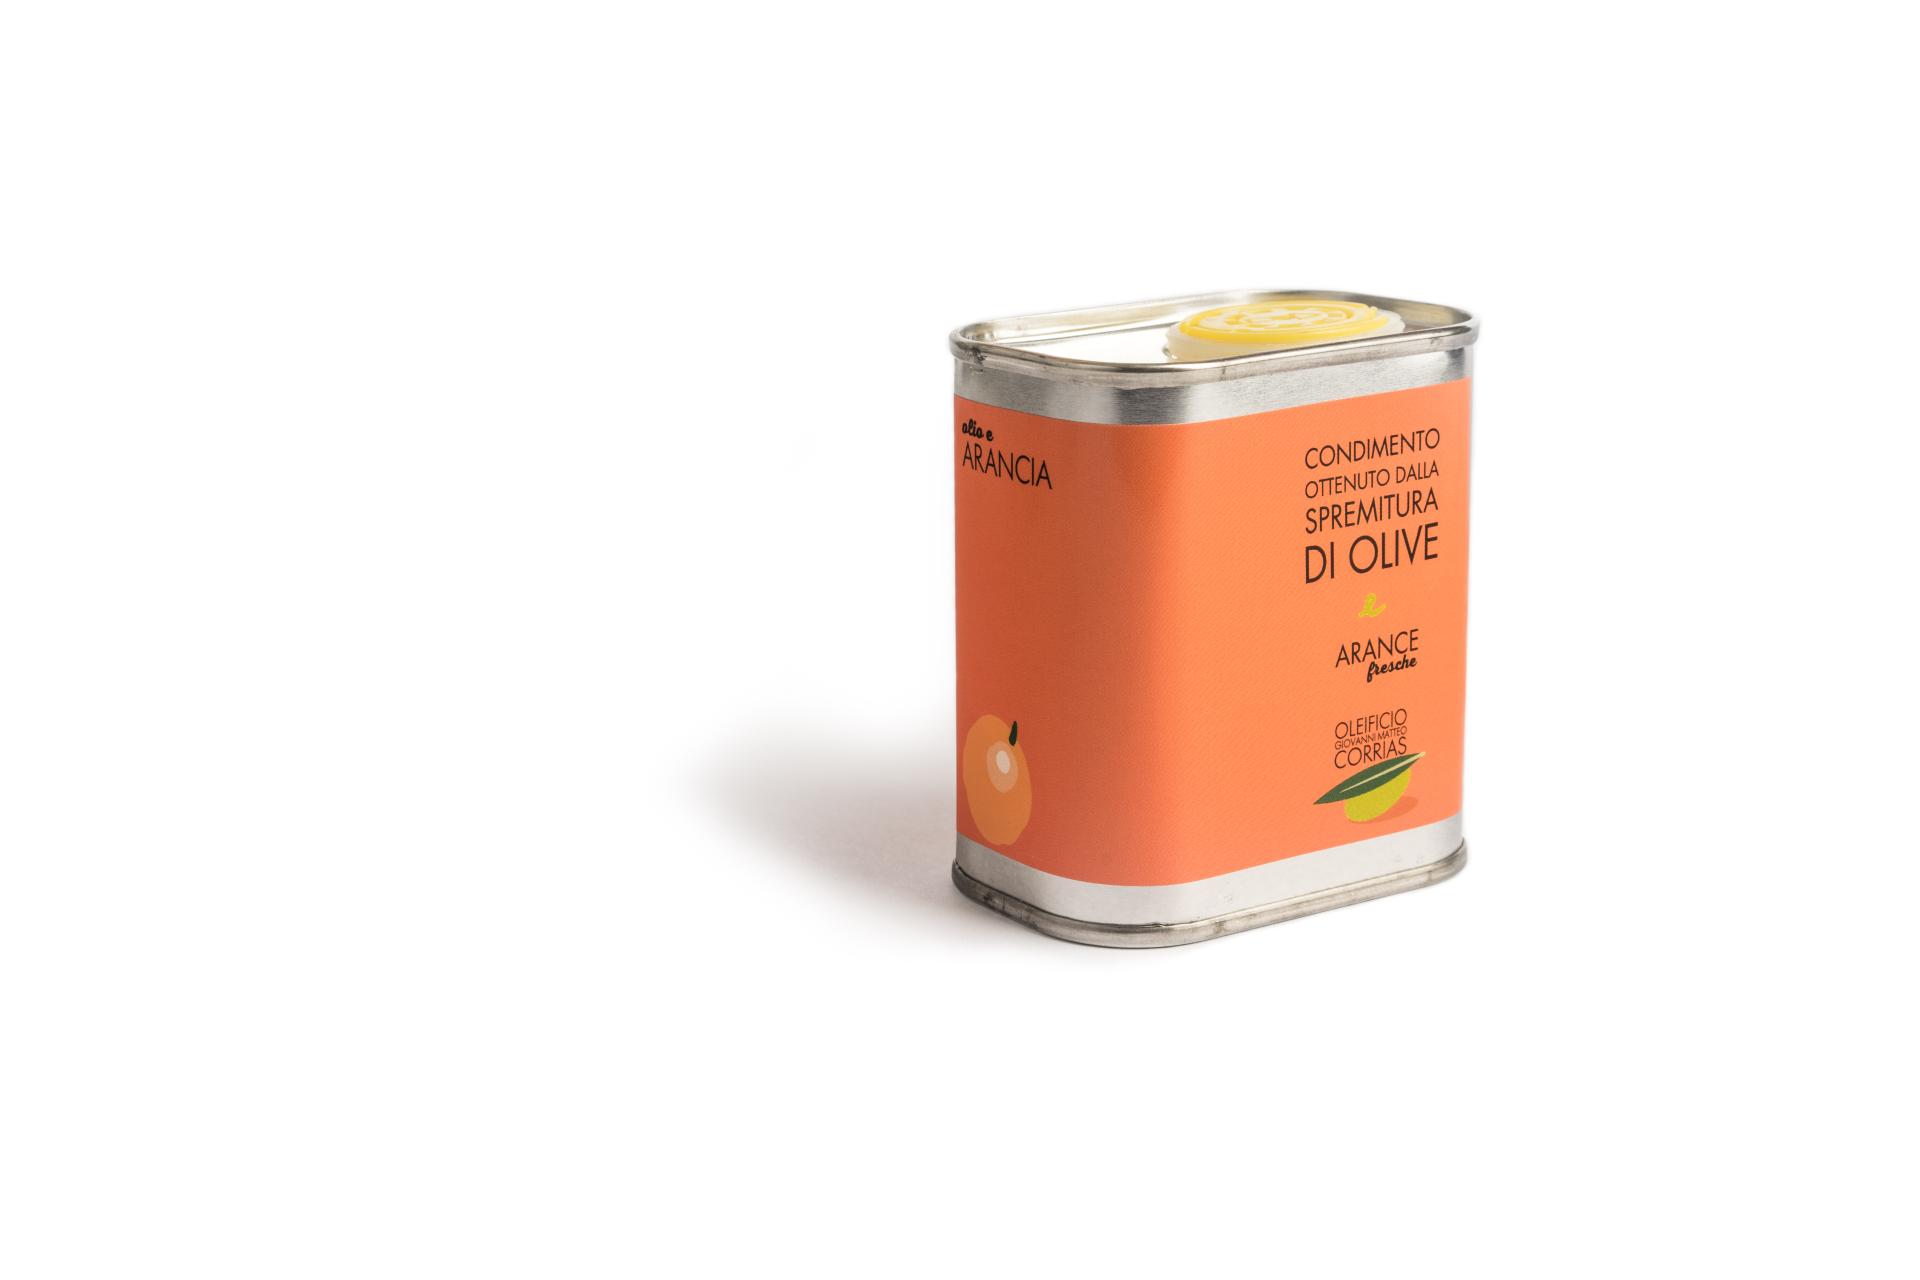 Condimento Corrias all'arancia su base olio extra vergine d'oliva ml 175